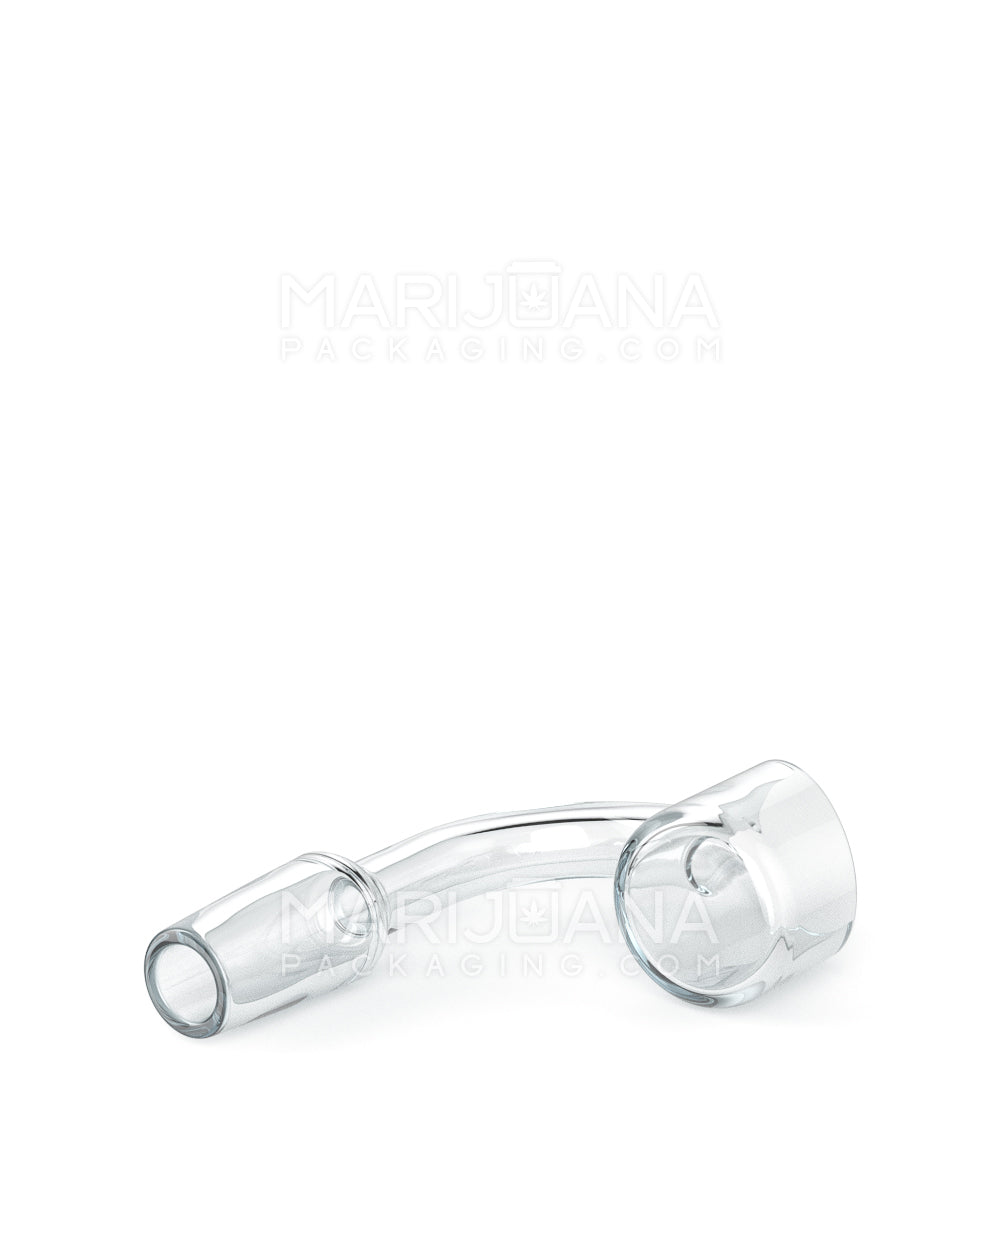 USA Glass | Thick 2mm Quartz Banger Nail | 14mm - 90 Degree - Male - 5